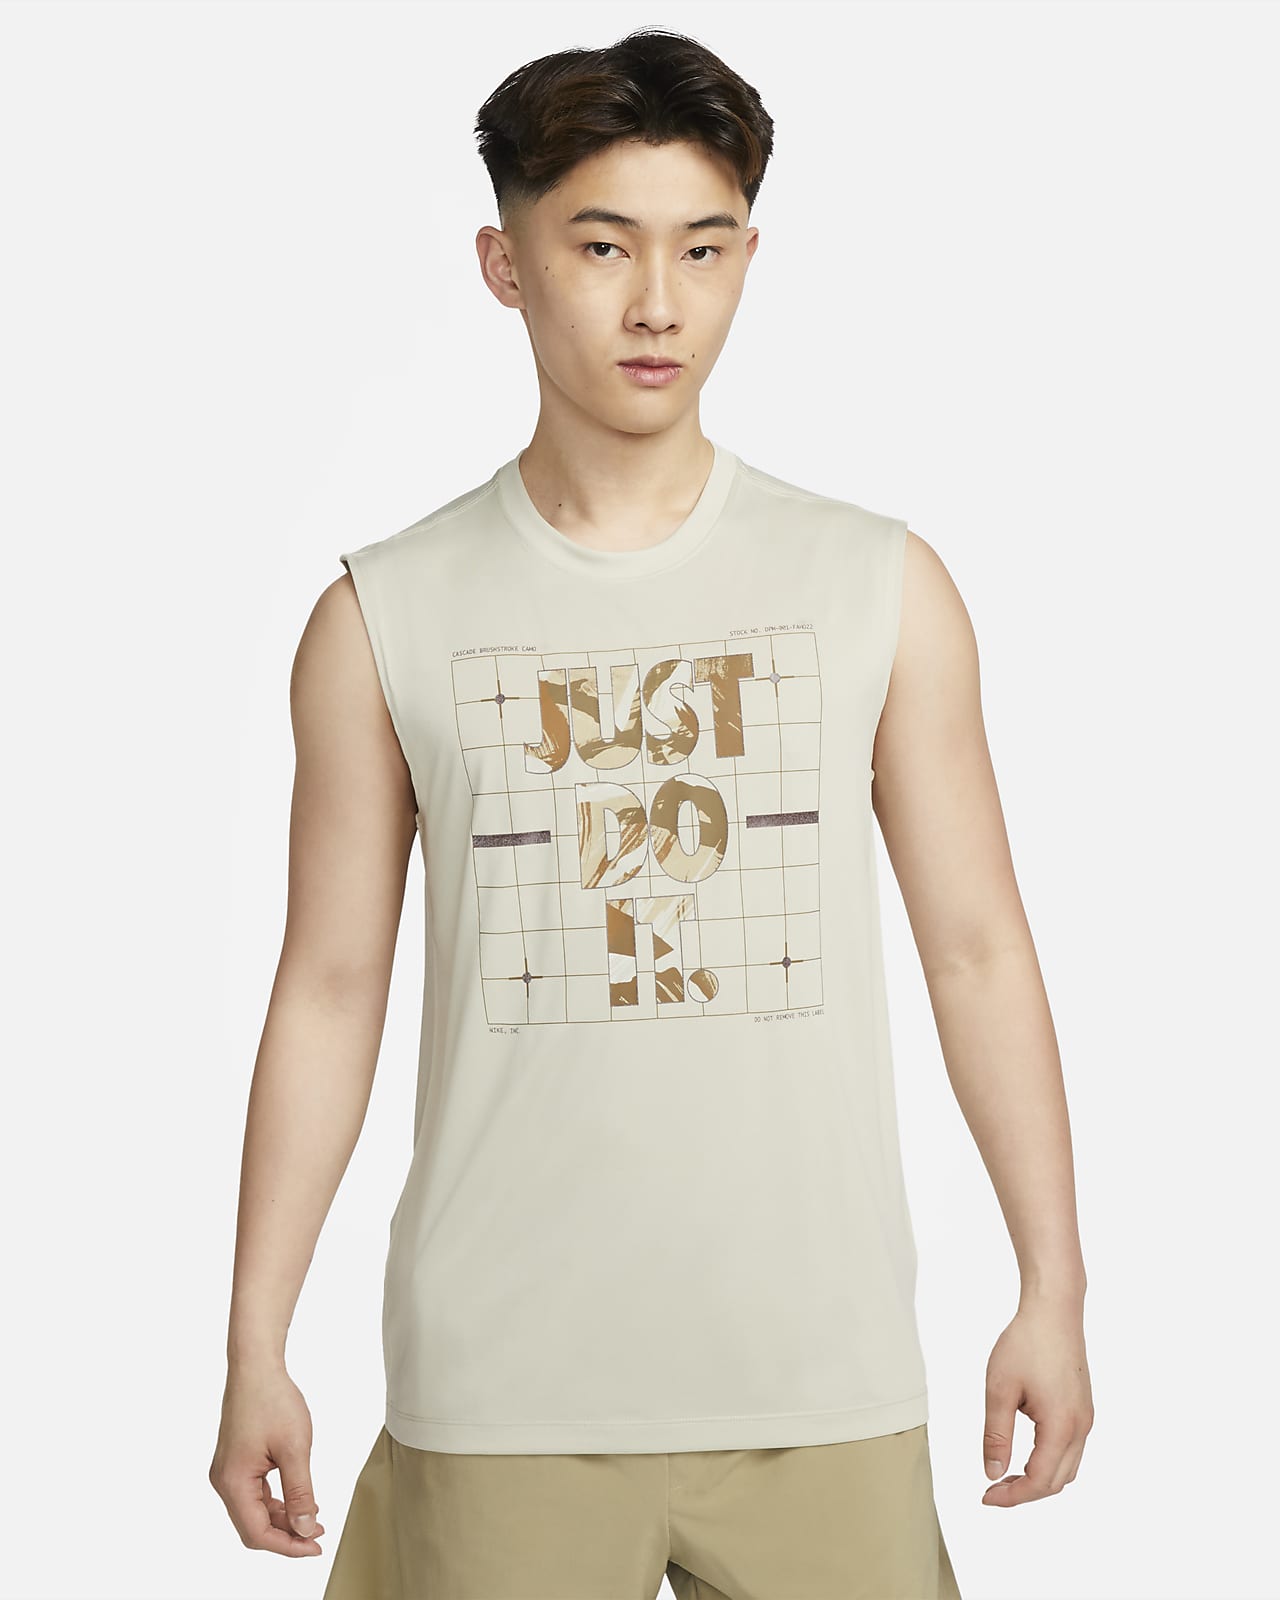 Nike Camo T-Shirt  [Replace] 